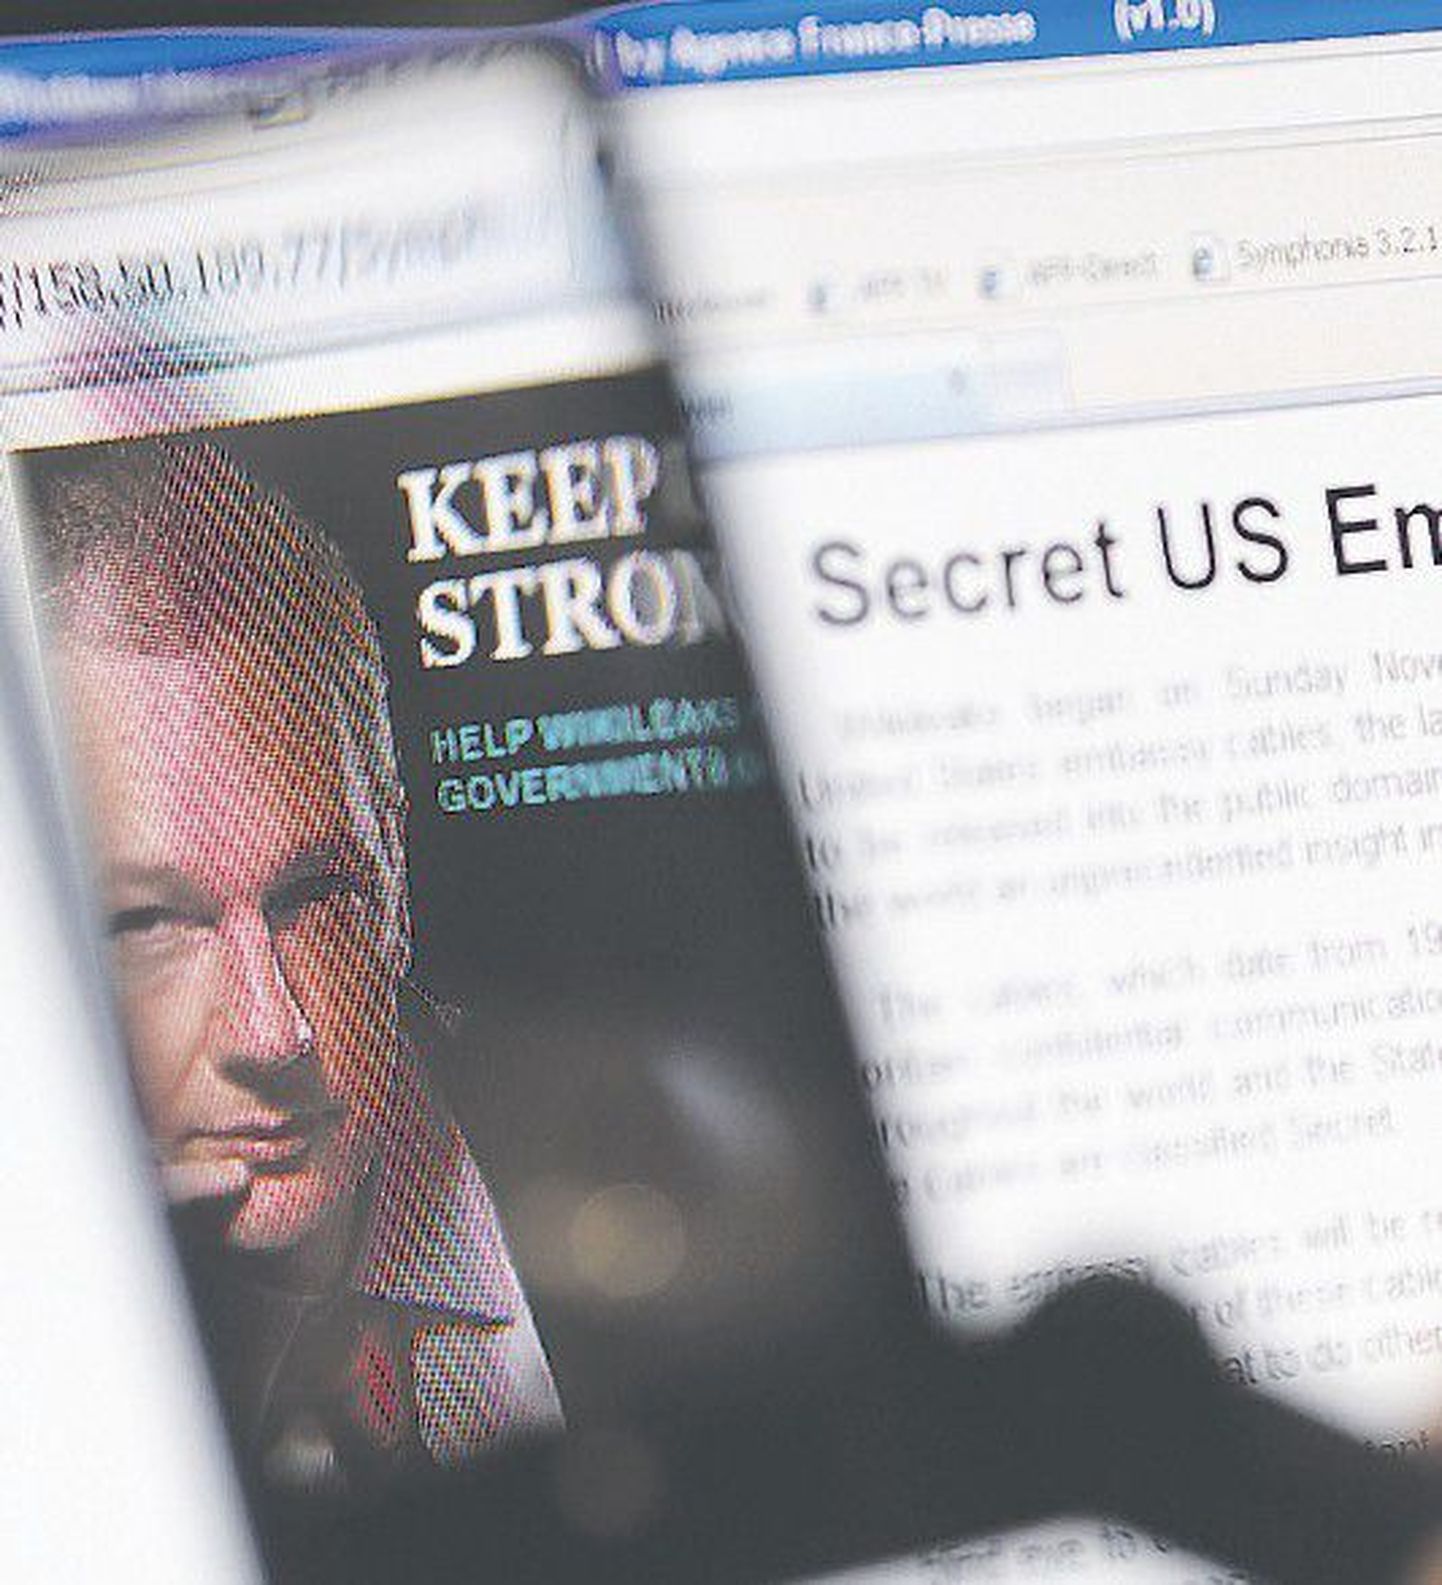 Взгляд на основателя Wikileaks Джулиана Ассанжа сквозь увеличительное стекло.